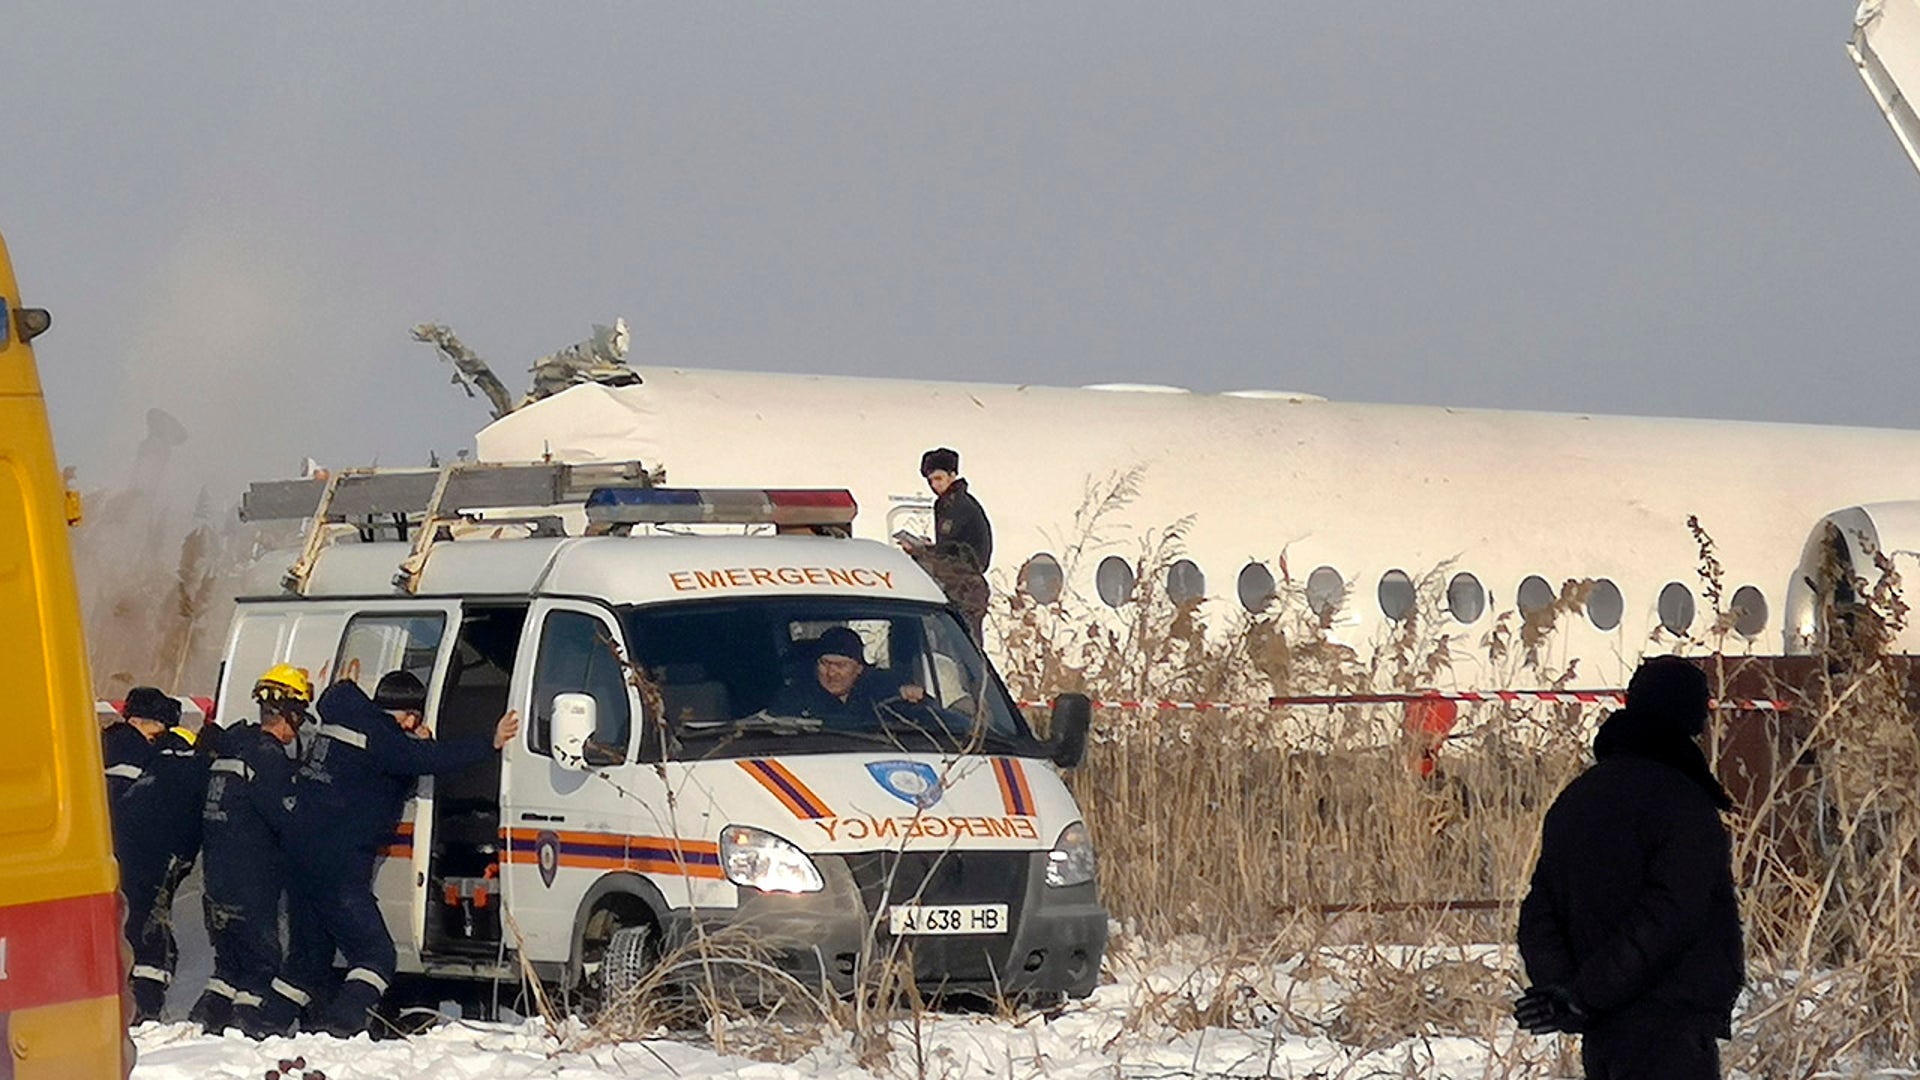 4 декабря казахстан. Авиакатастрофа в Алма Ате 2019. Fokker 100 bek Air катастрофа. Бек Эйр катастрофа 27 декабря. Катастрофа Fokker 100 под Алма-атой.